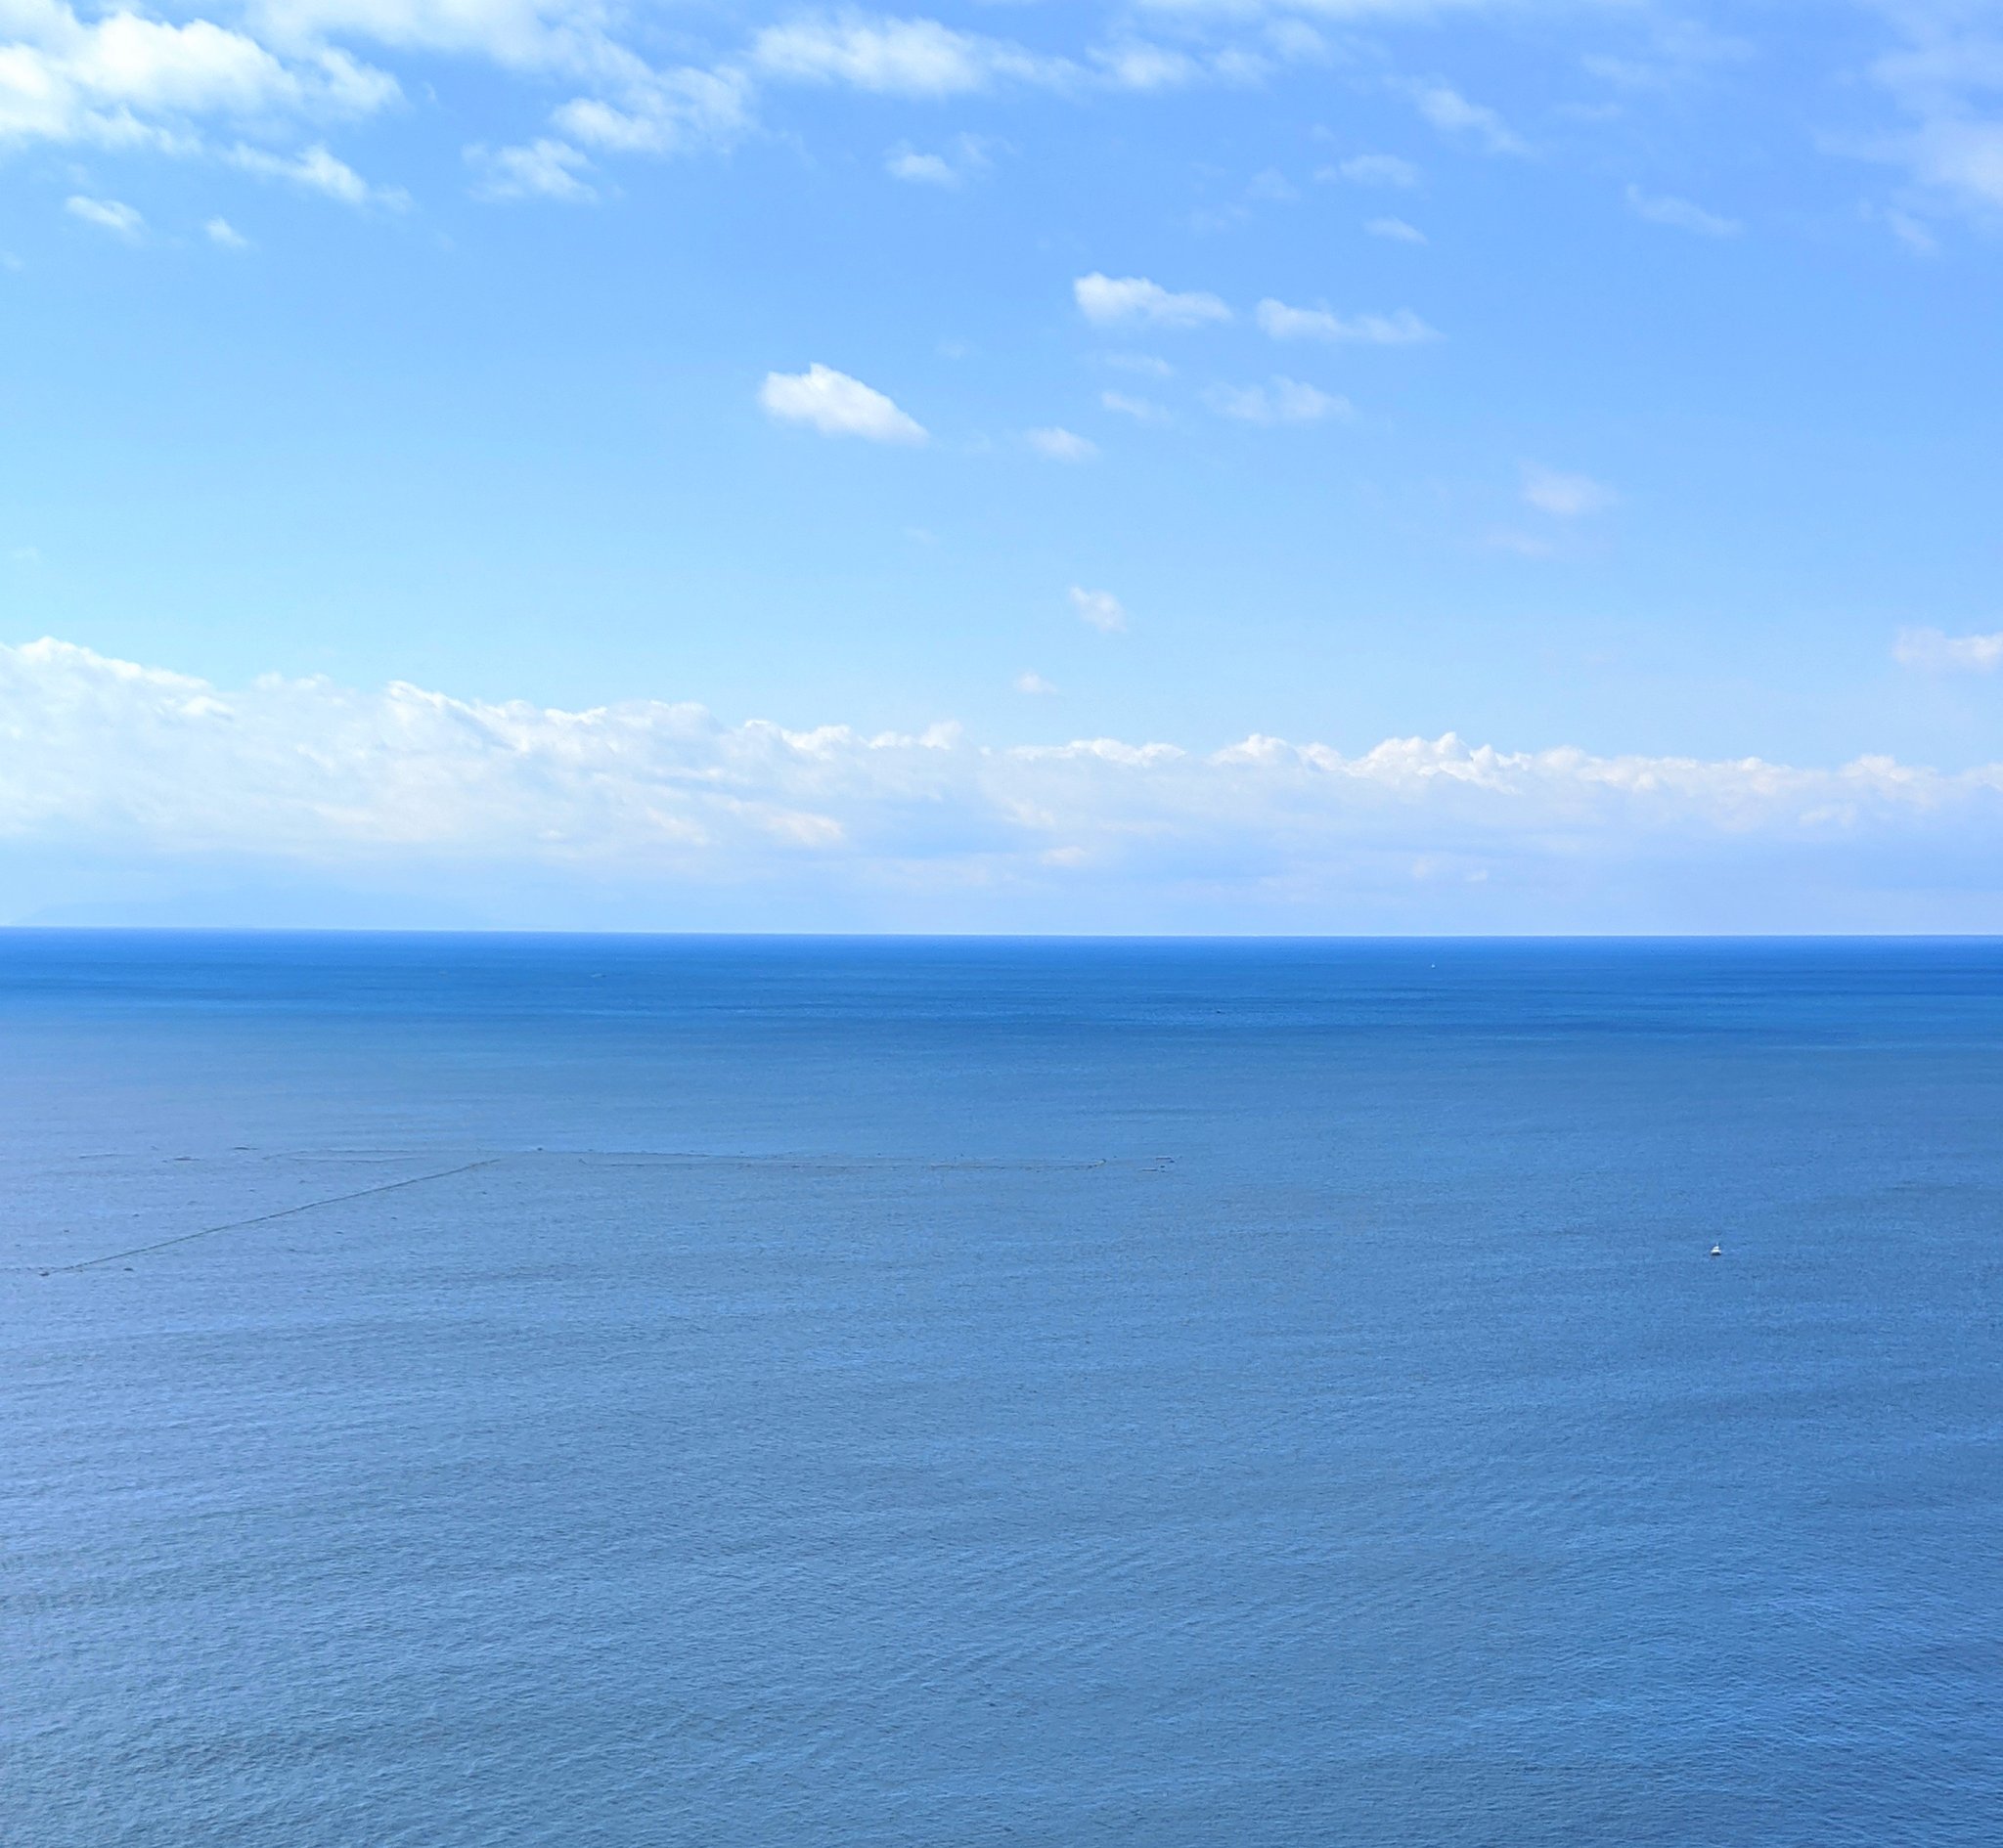 みつばちまーちゃん 江ノ島から見た海 空と海の色が とても綺麗 海絶景 T Co Fclkxq1p2c Twitter